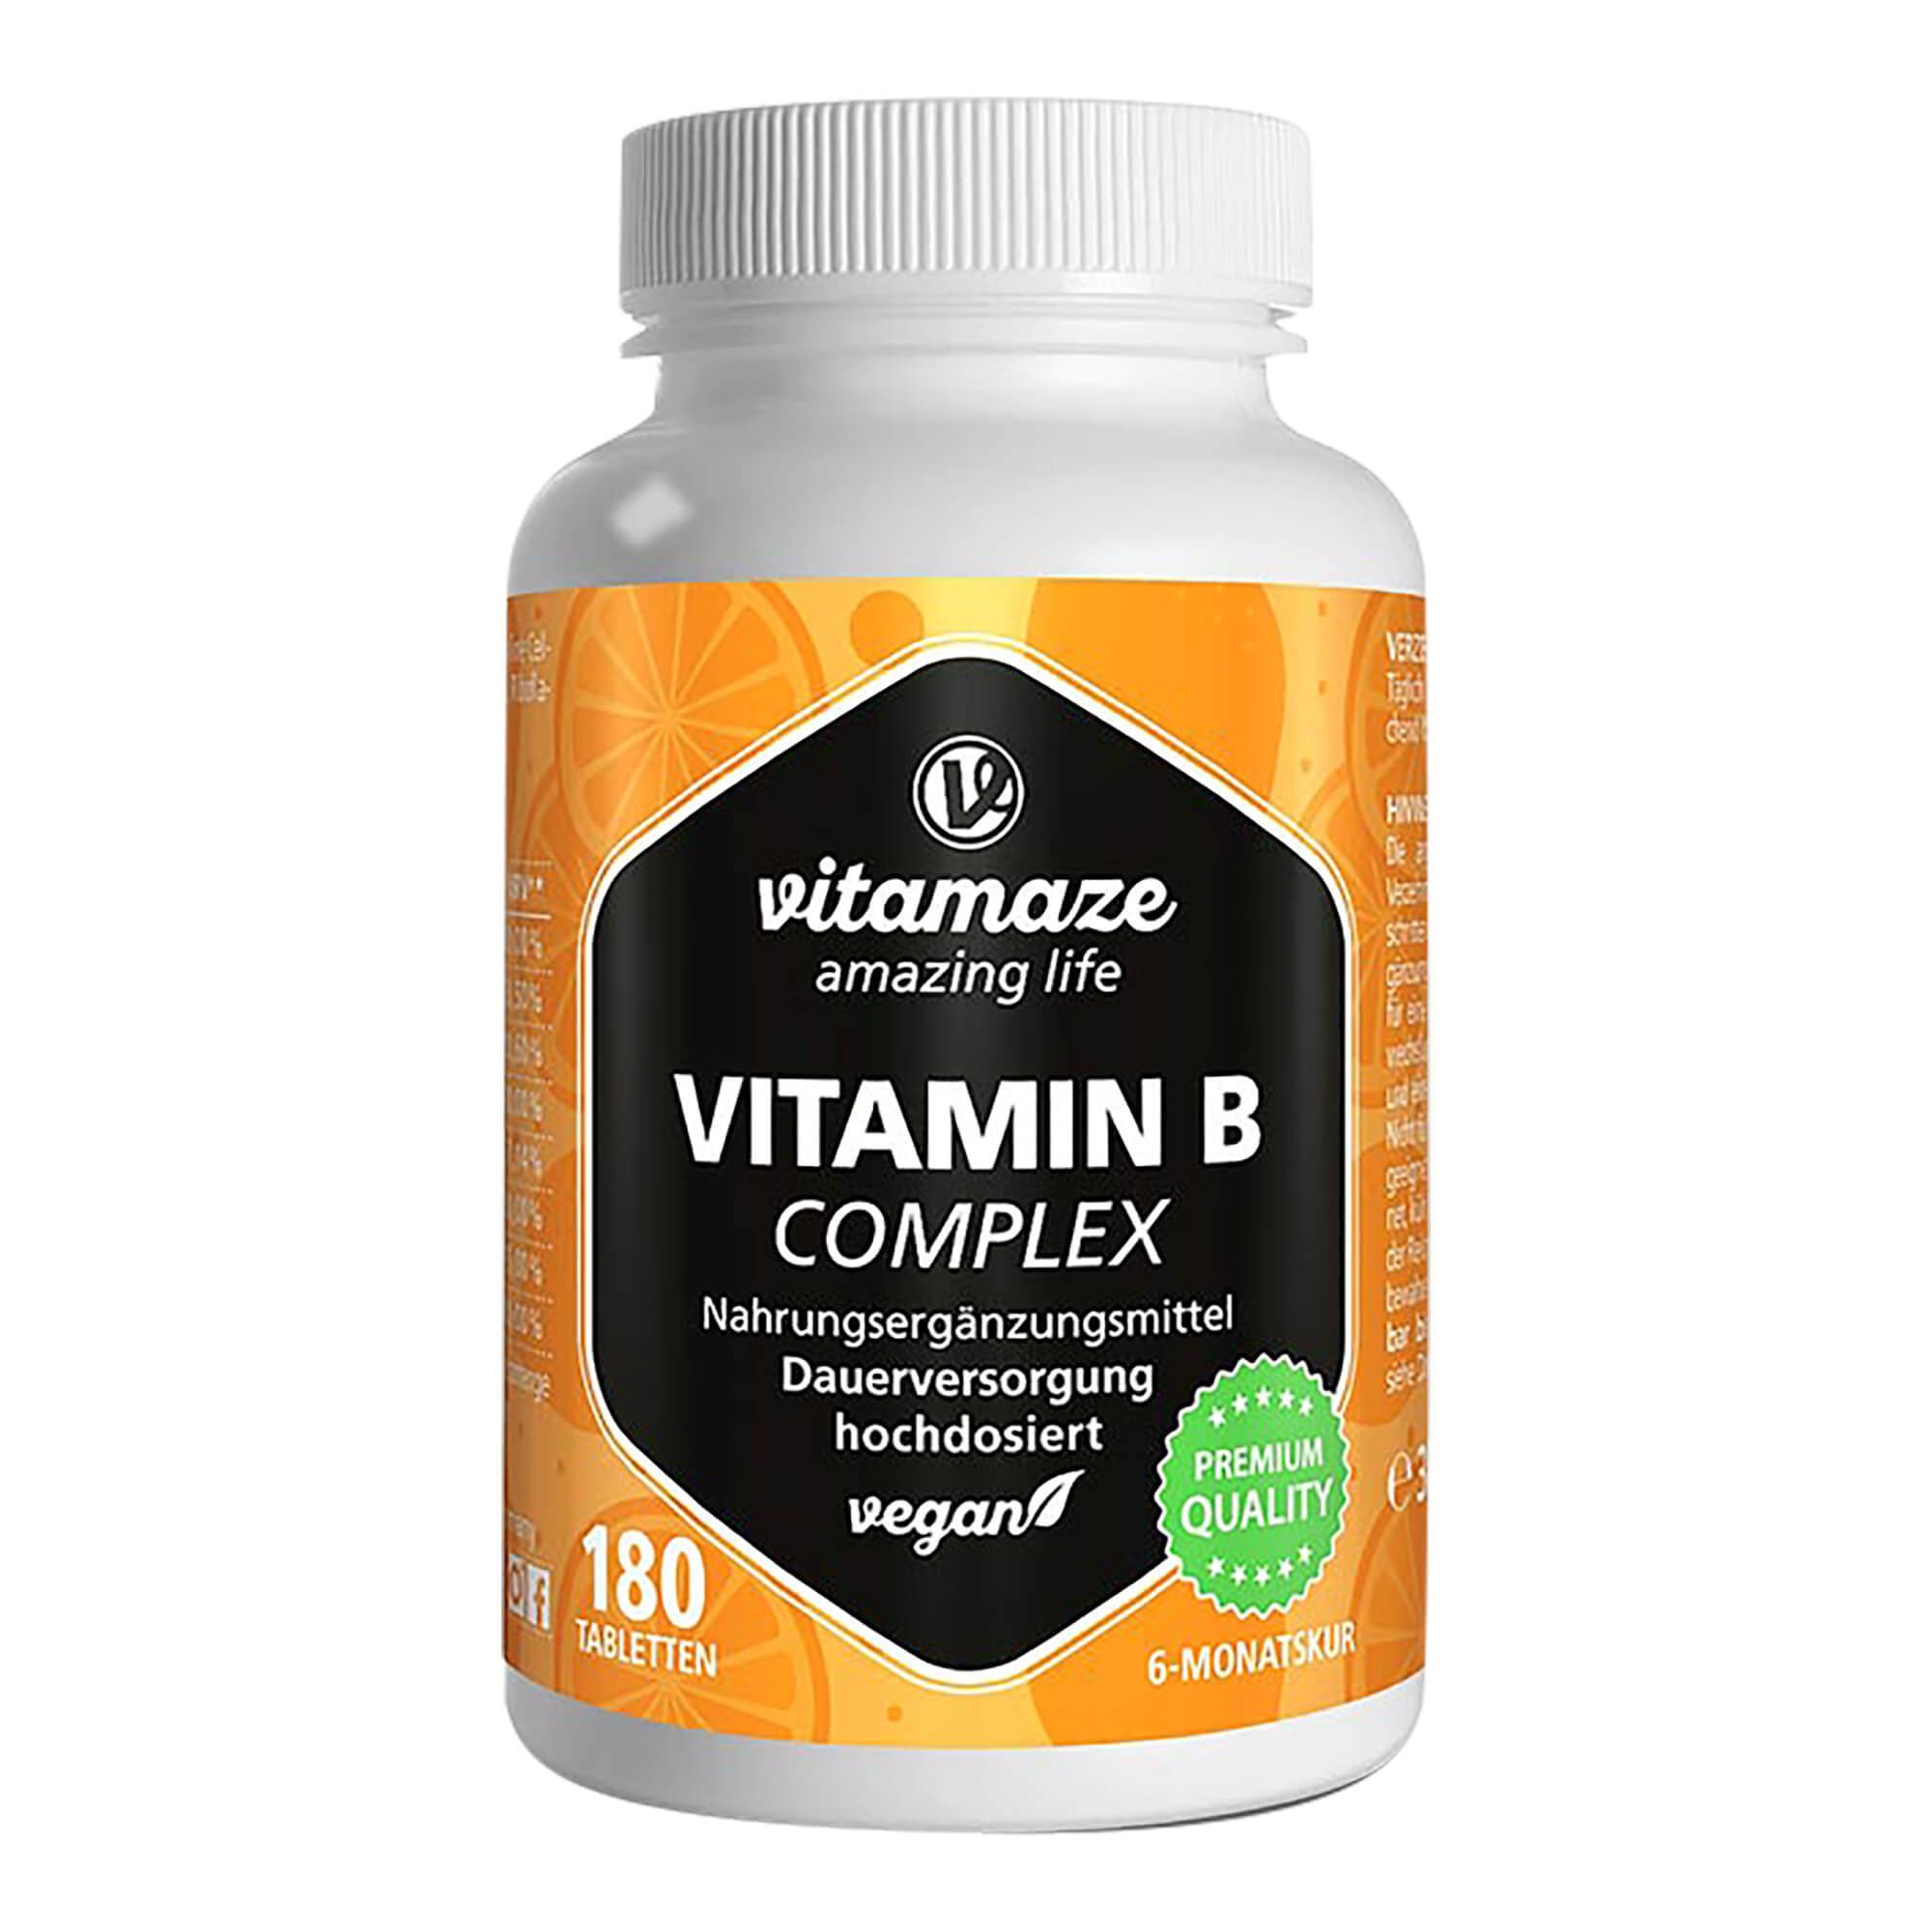 Nahrungsergänzungsmittel mit hochdosiertem Vitamin B-Komplex. Vegan.